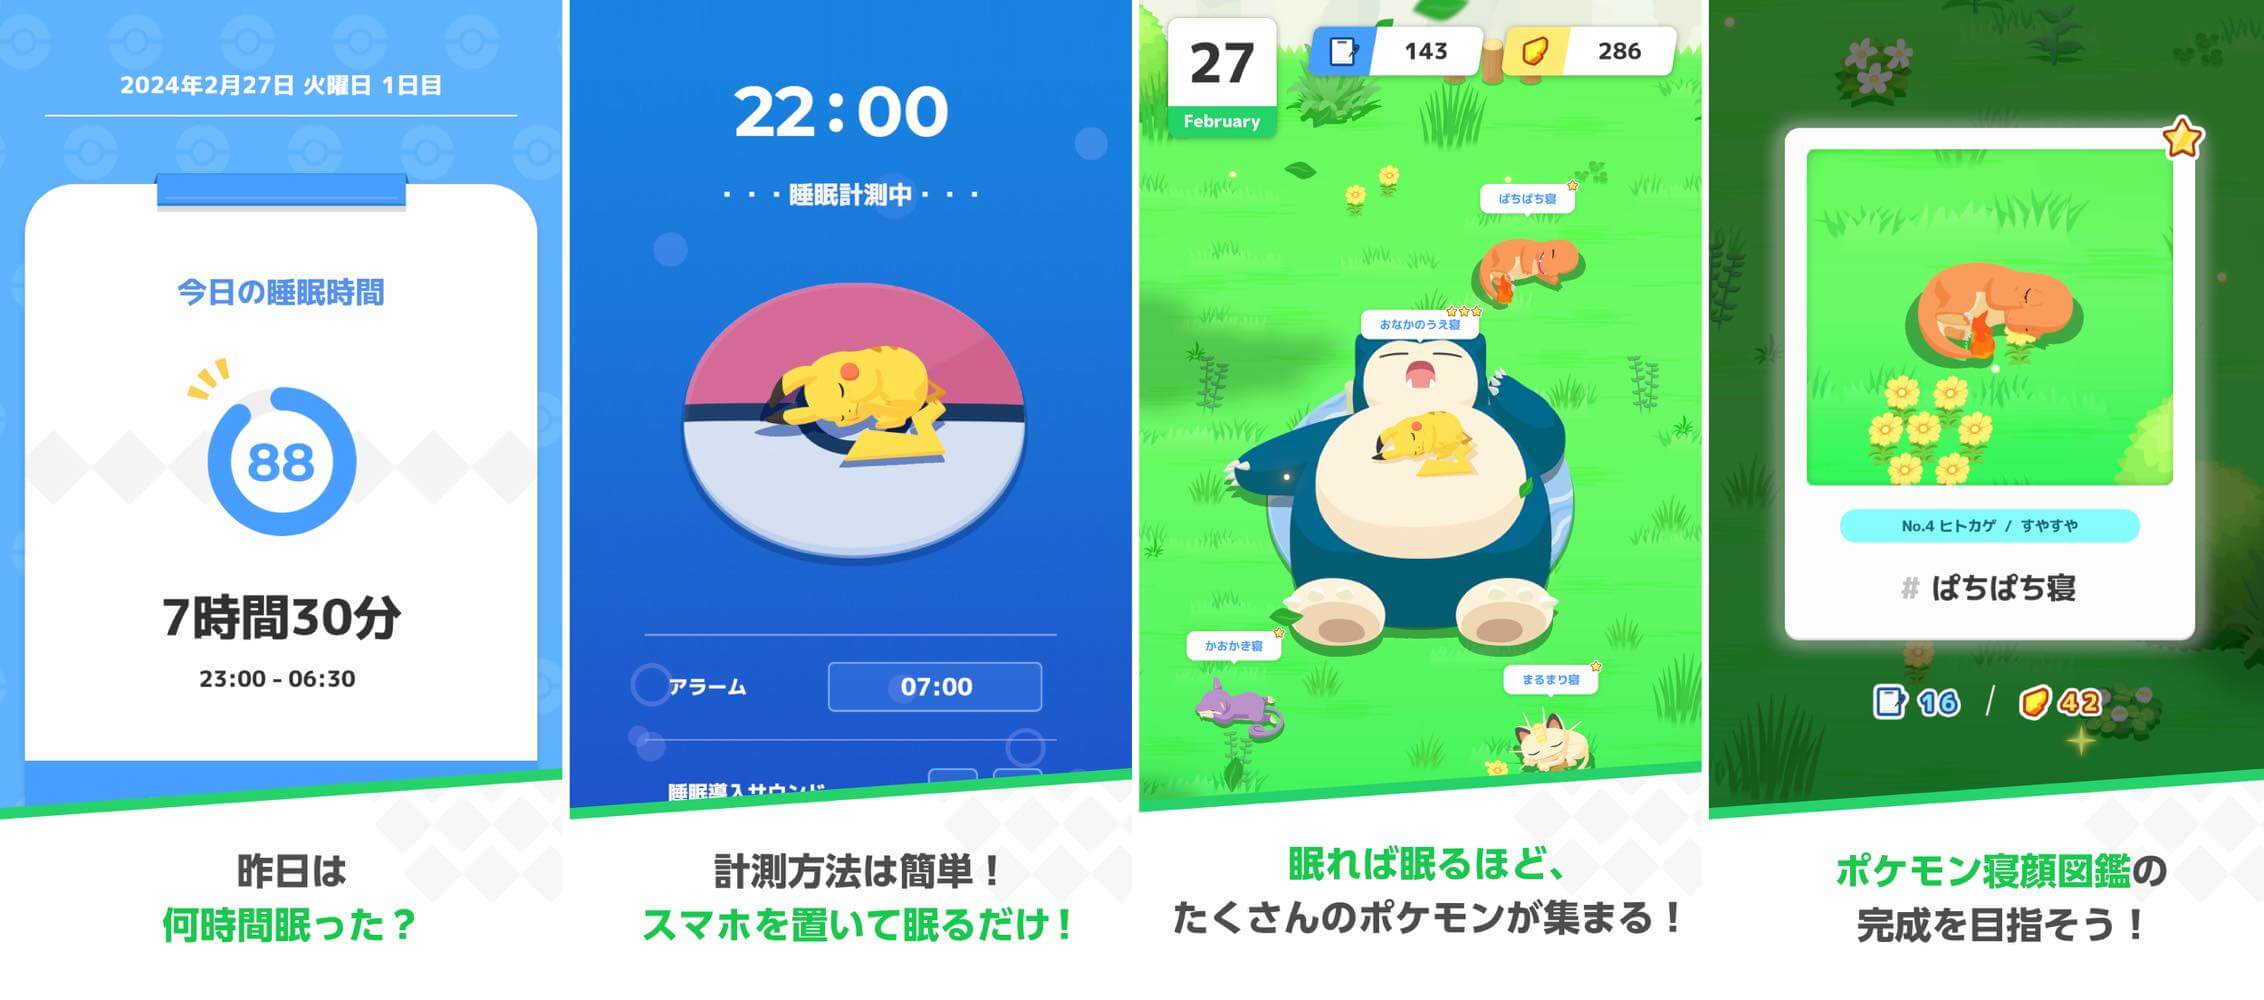 睡眠でポケモンの寝顔を集めるスマホアプリ｢Pokémon Sleep｣、7月下旬に配信開始へ